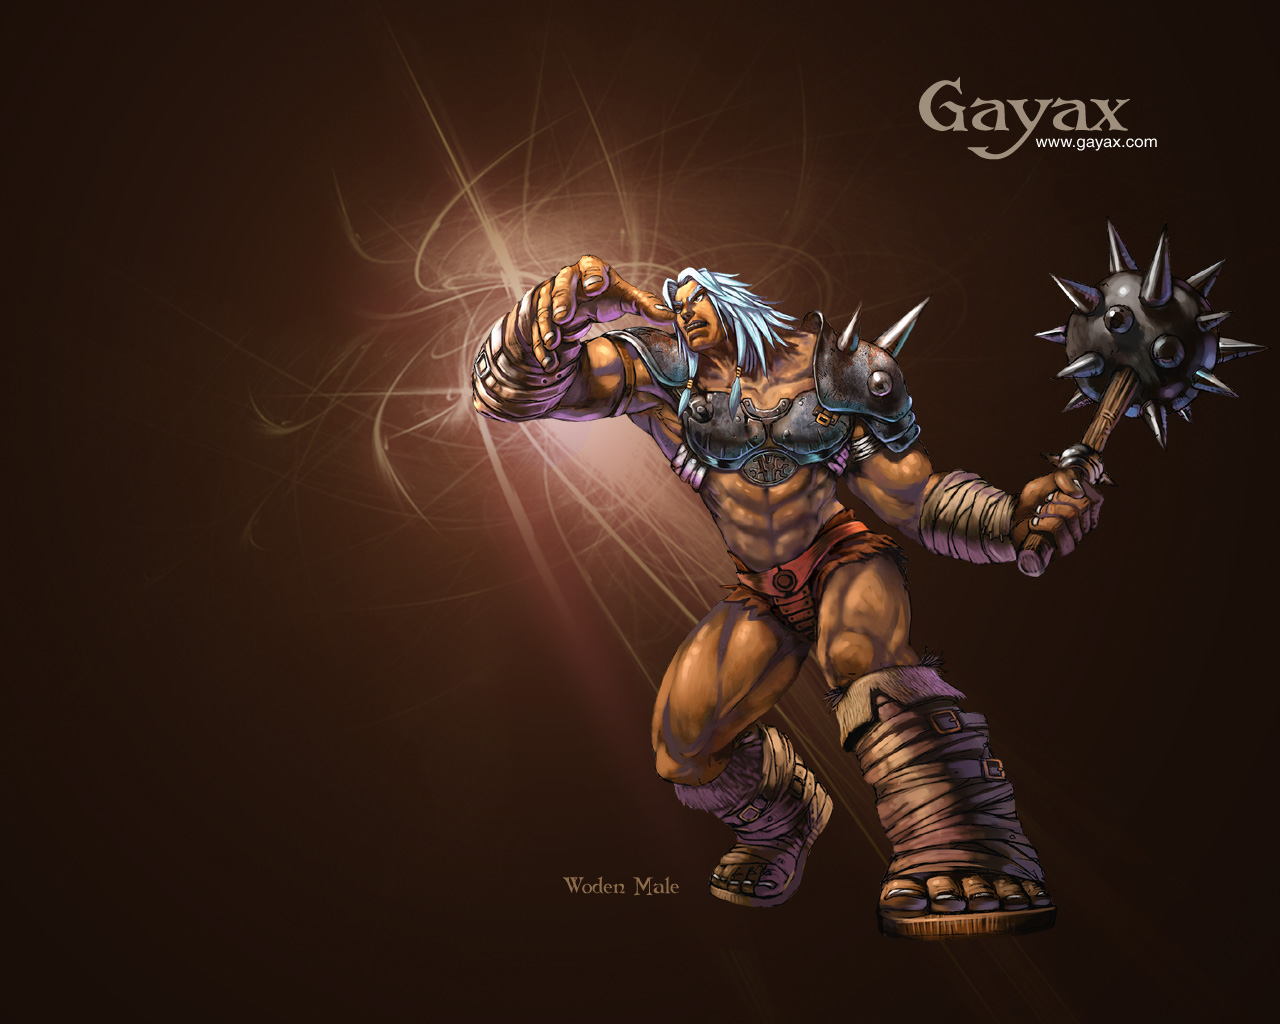 Images of Gayax | 1280x1024